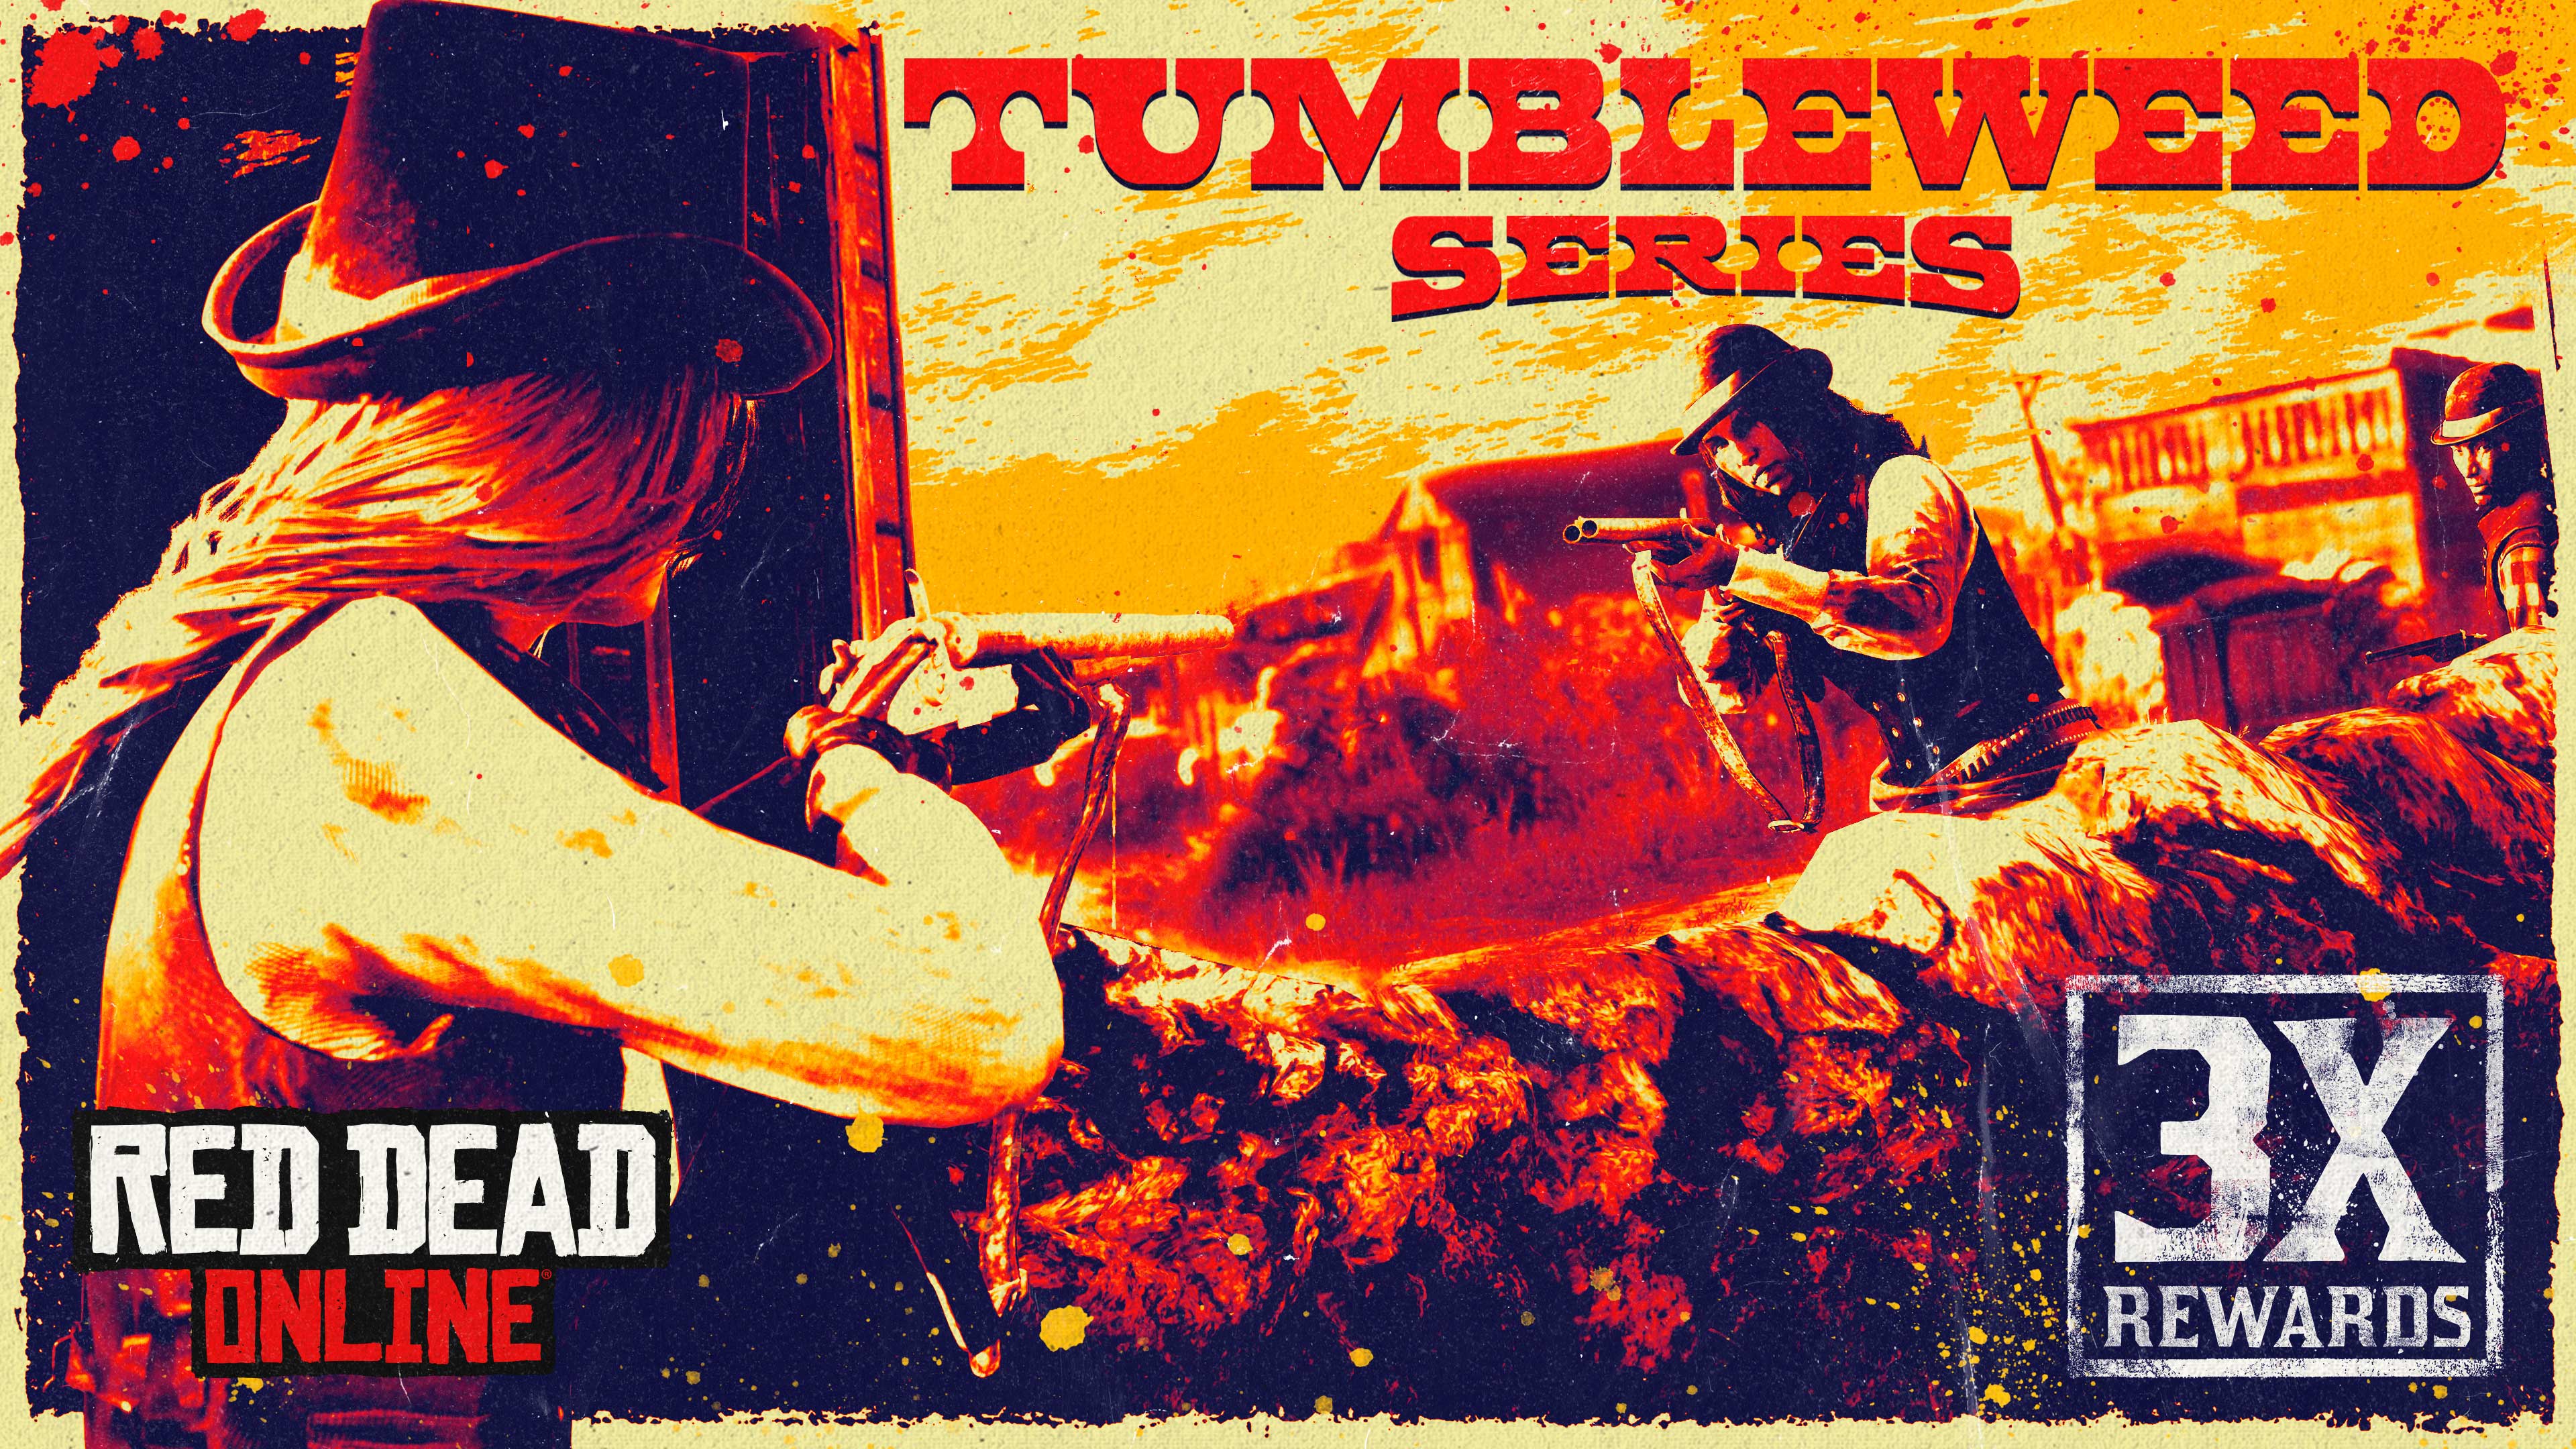 red dead online tumblewee series 3x